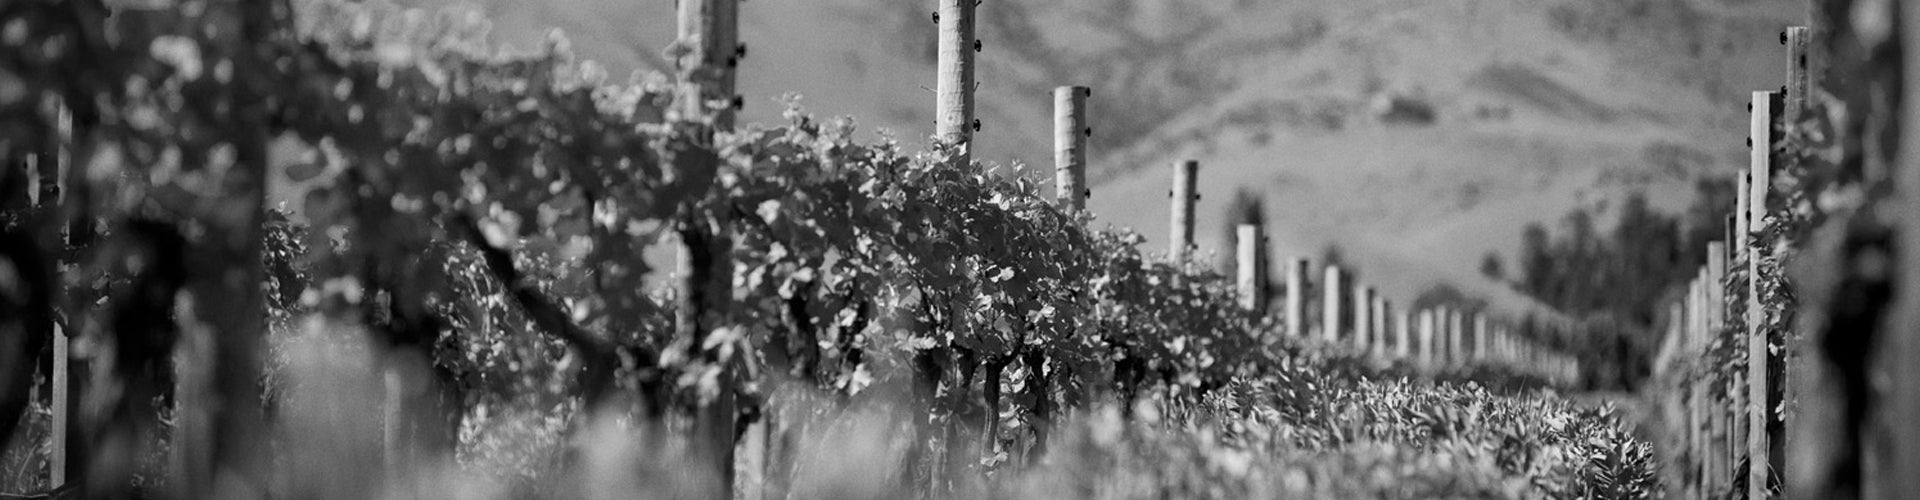 Mahi vineyard in Marlborough